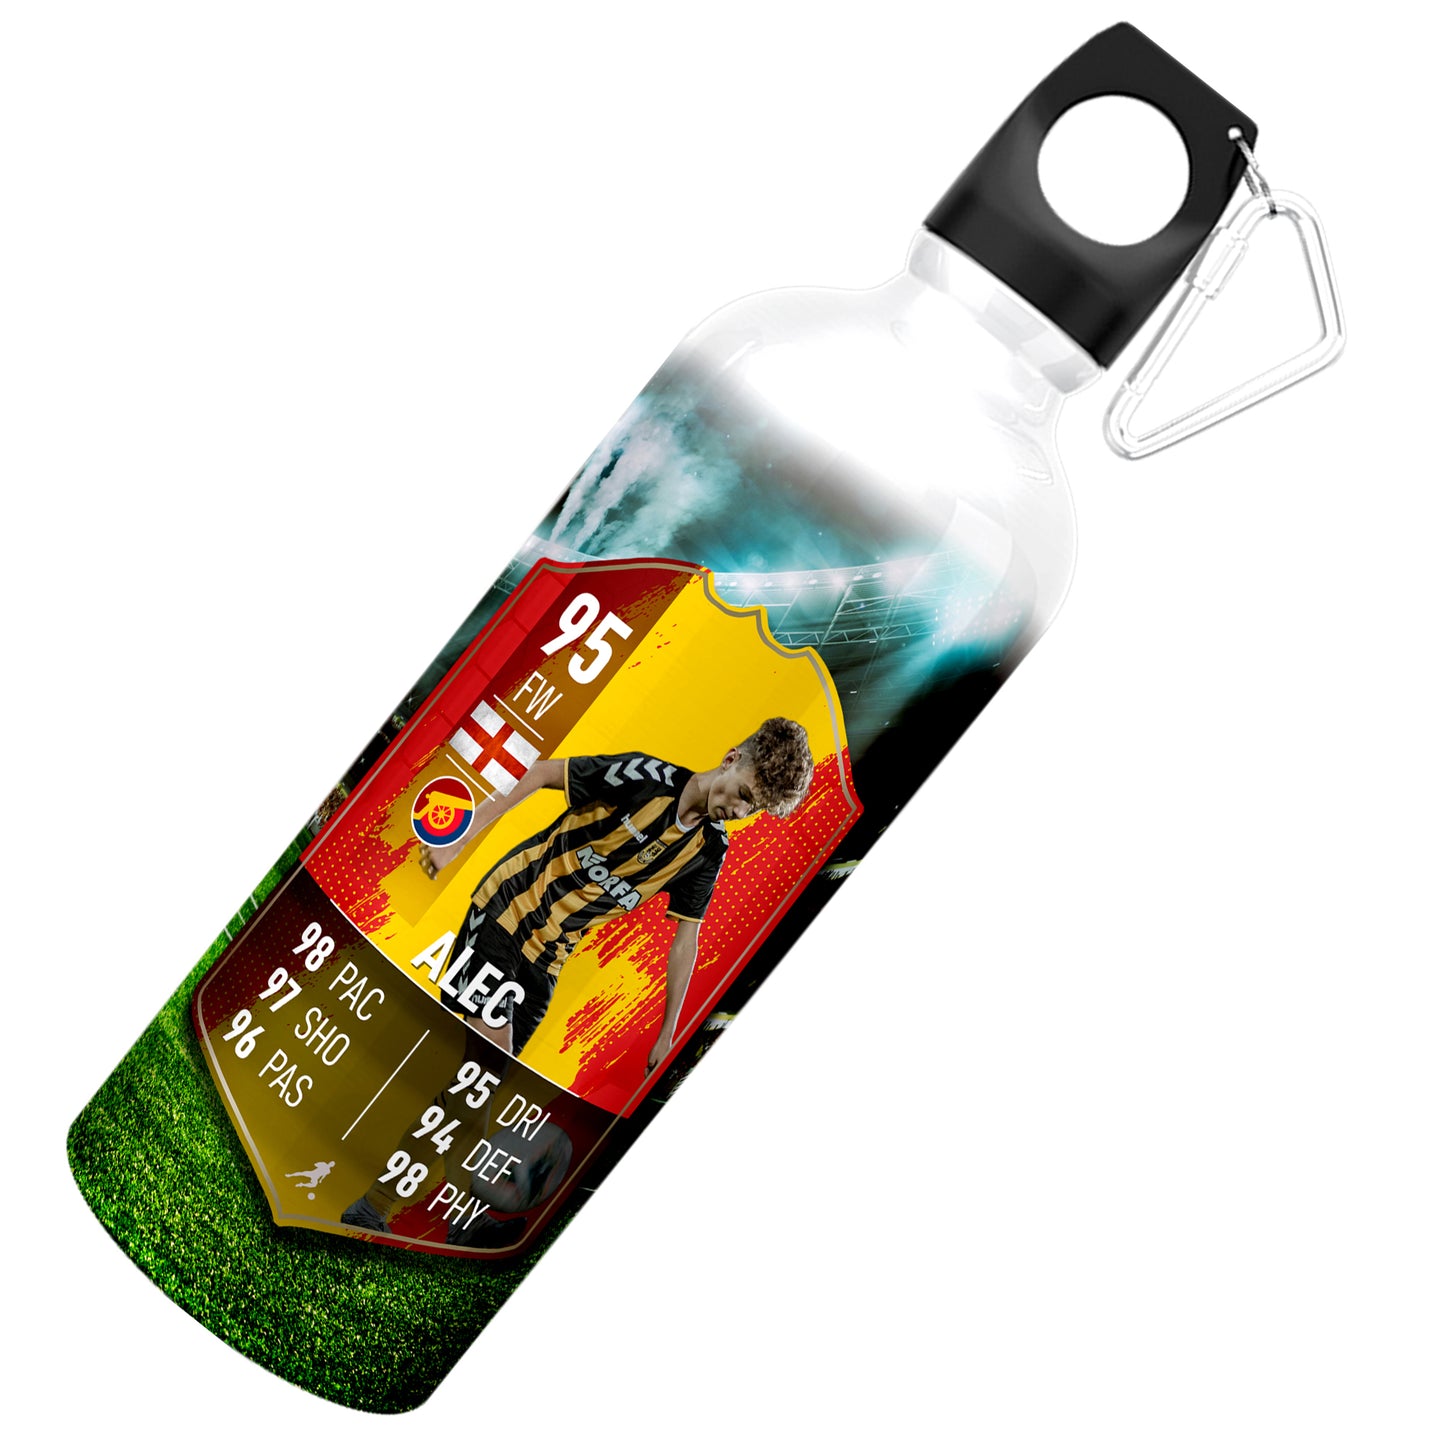 Fußball-Statistik-Wasserflasche aus Aluminium mit gelben Streifen